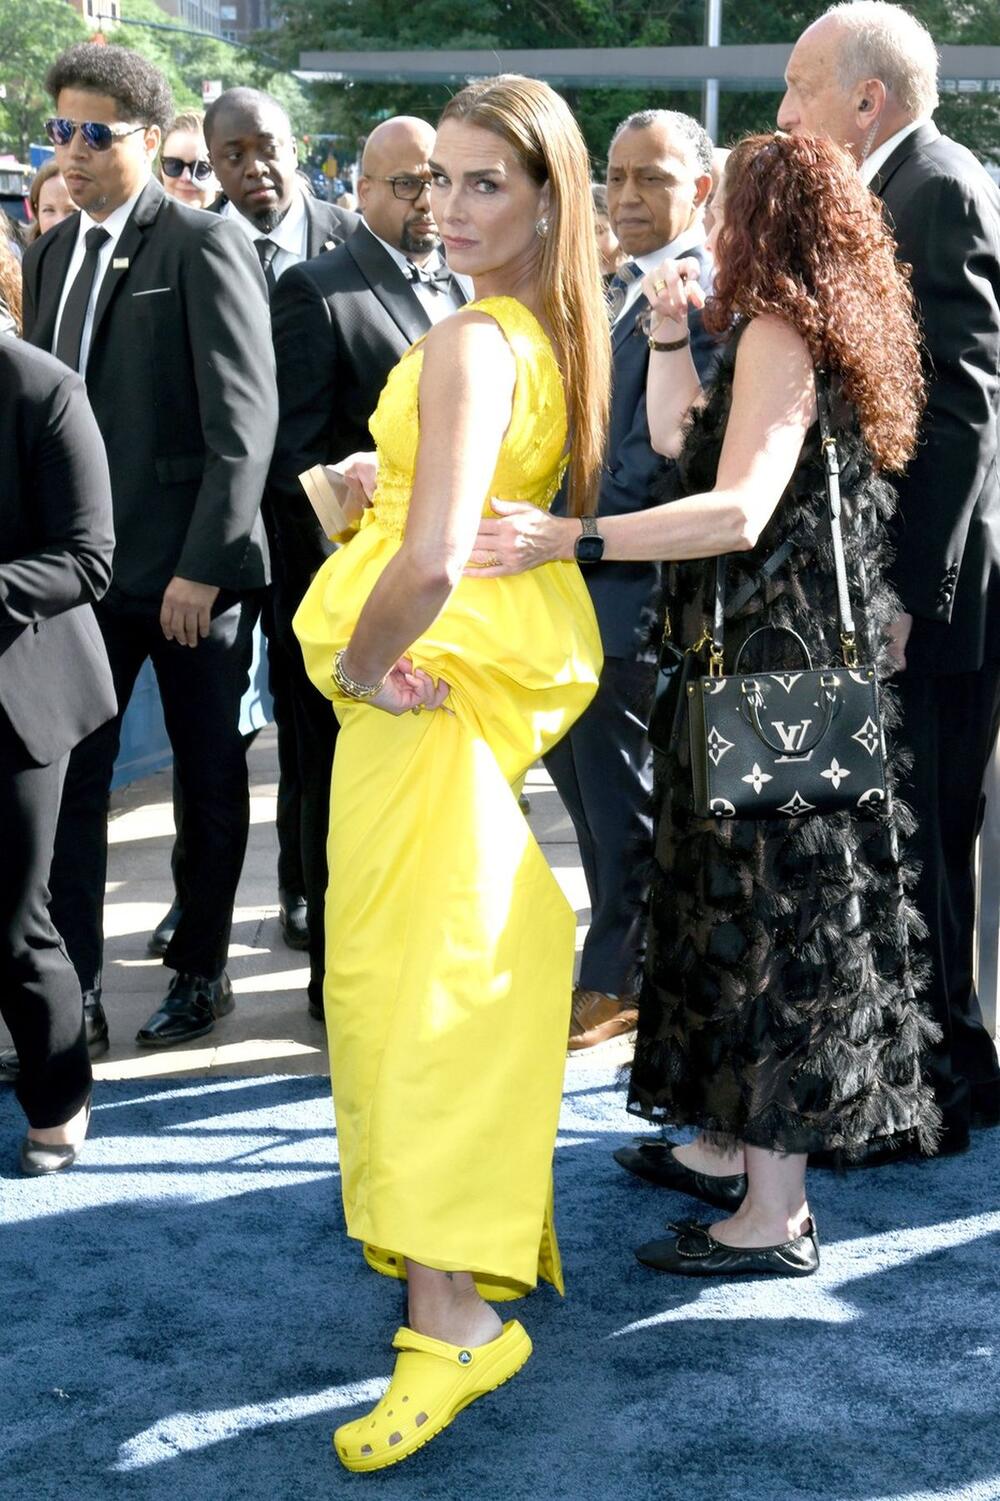 Bruk Šilds u elegantnoj žutoj haljini i odgovarajućim 'kroksicama' na dodeli Toni nagrada